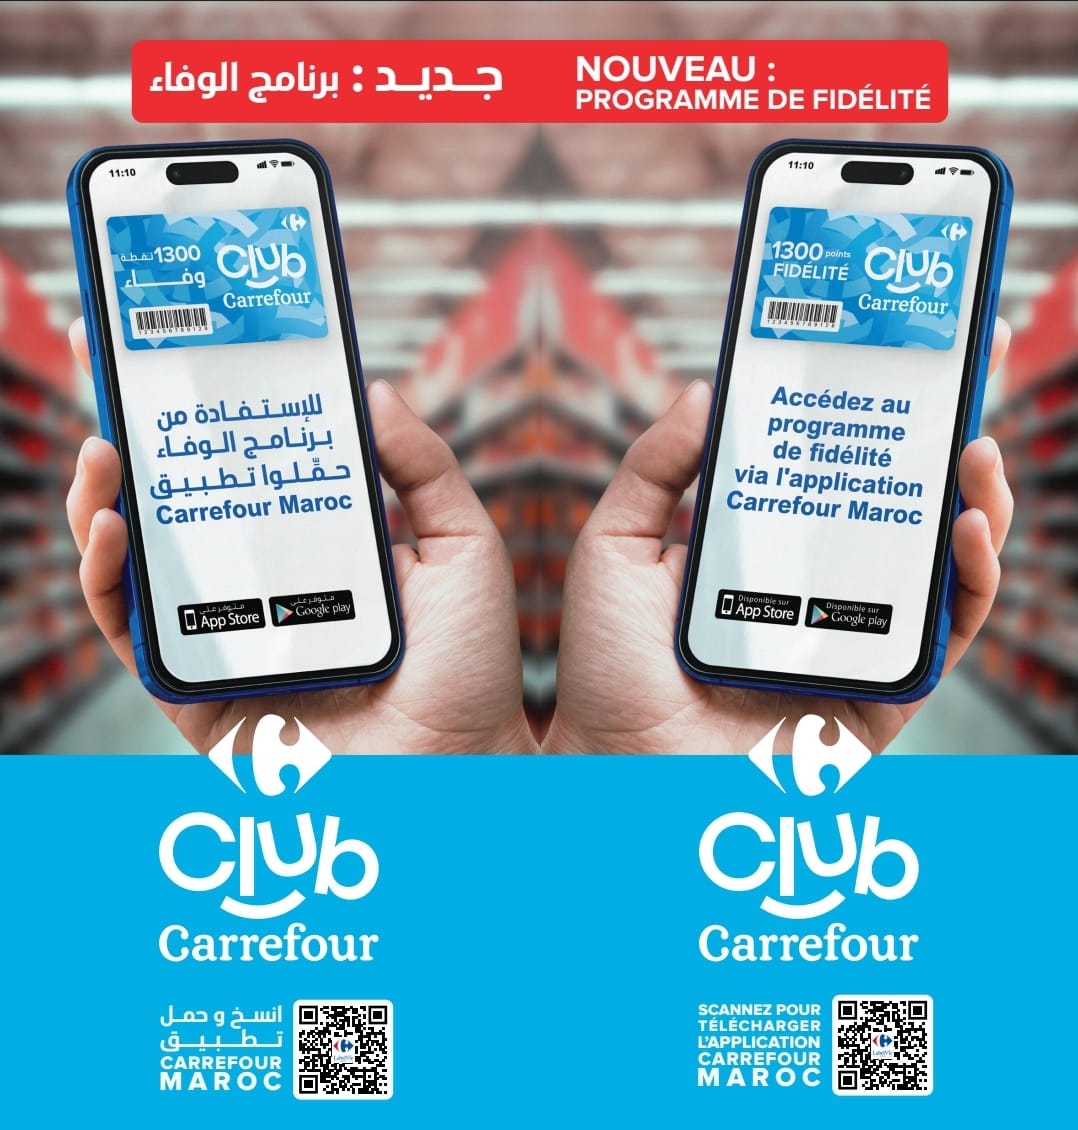 Le Groupe LabelVie généralise son programme de fidélité à l’ensemble de ses magasins au Maroc